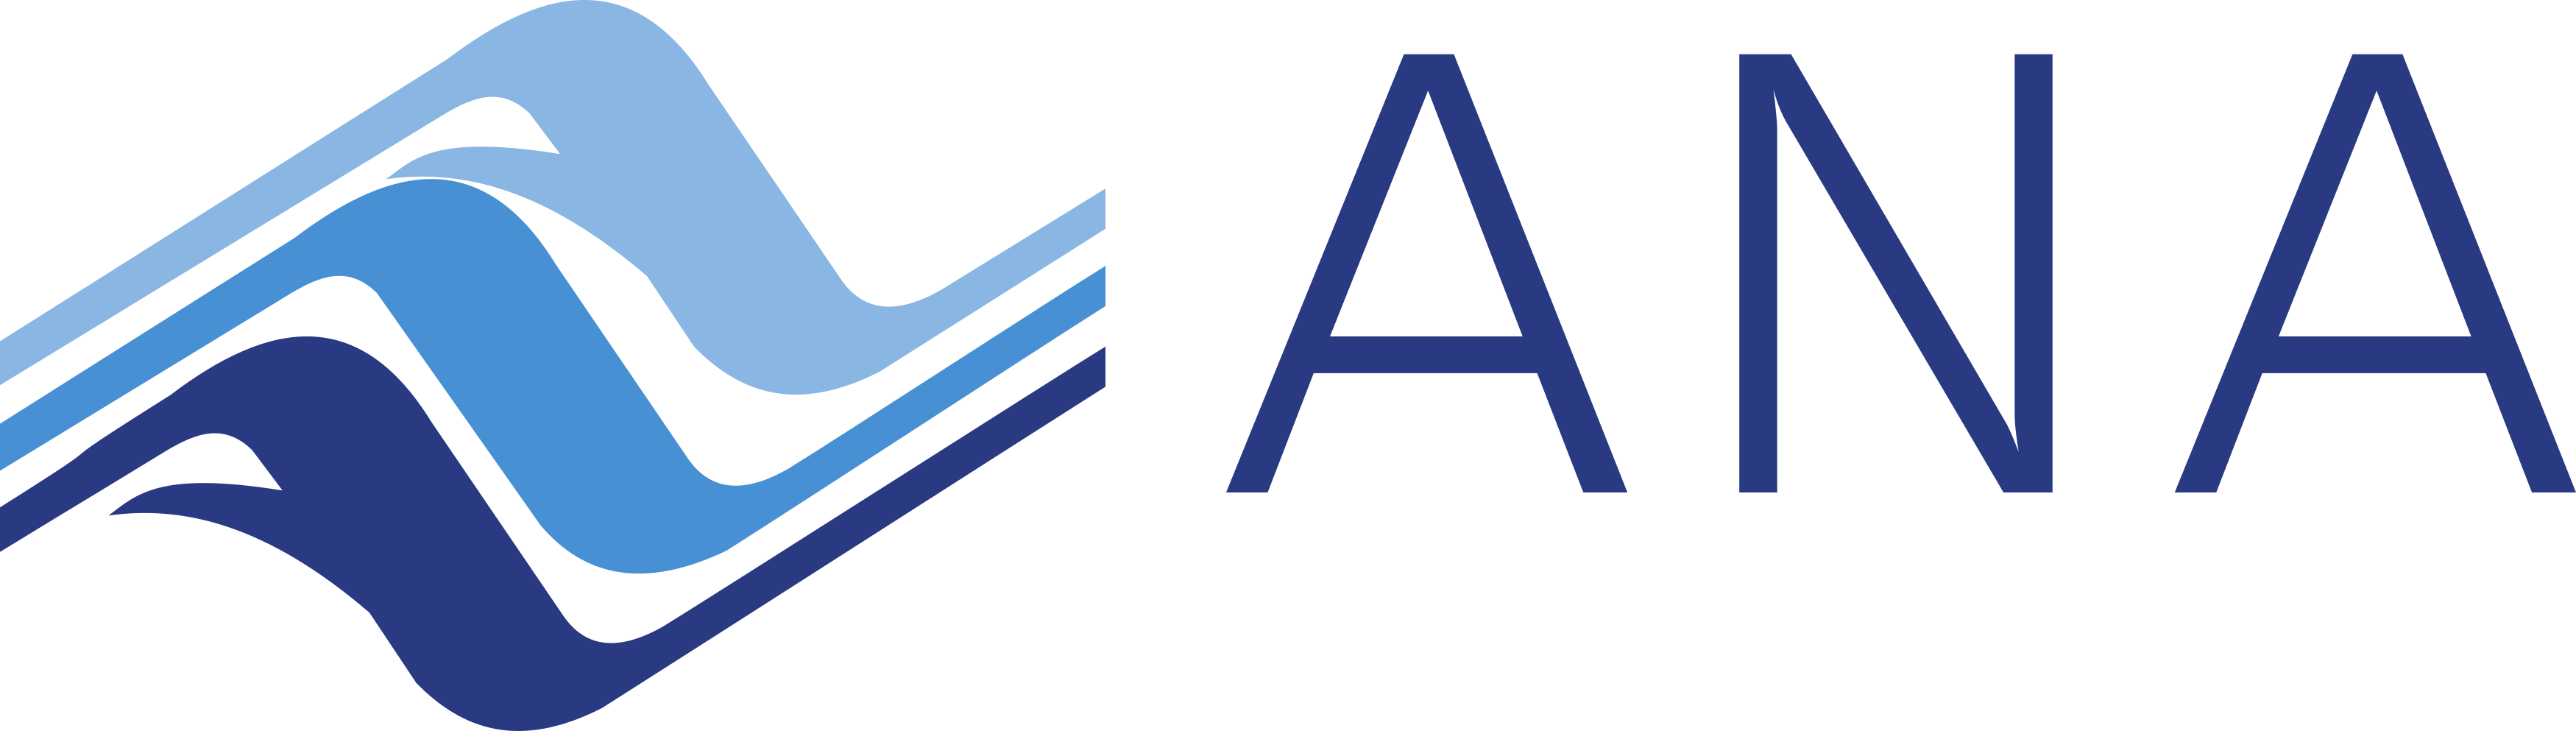 Ana Logo, Agência Nacional de Águas Logo.